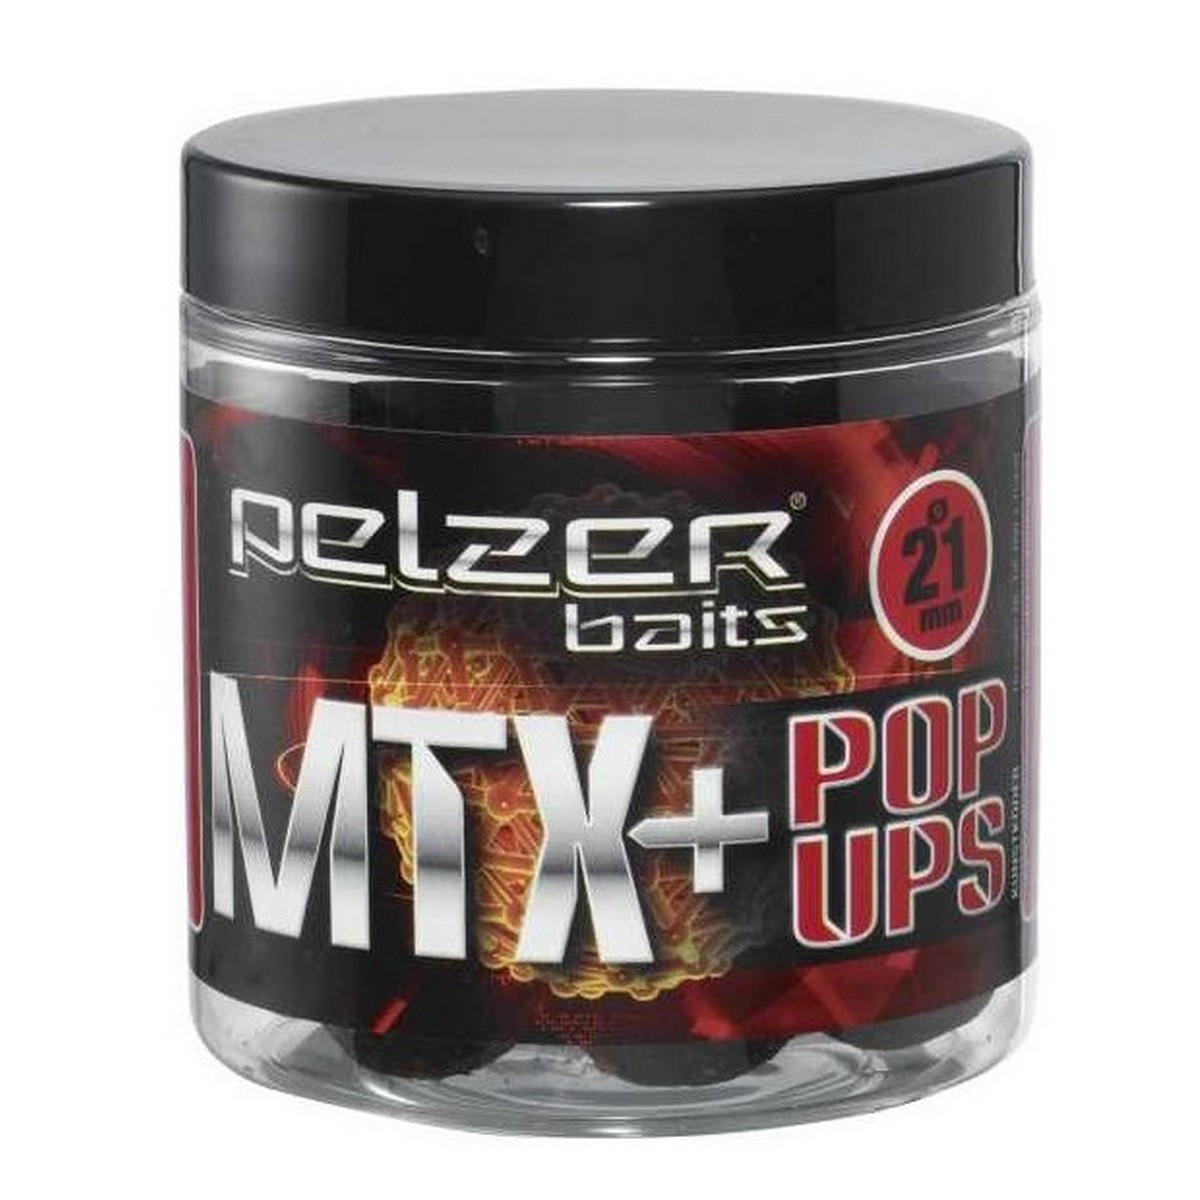 Pelzer MTX+ Pop Up 21mm